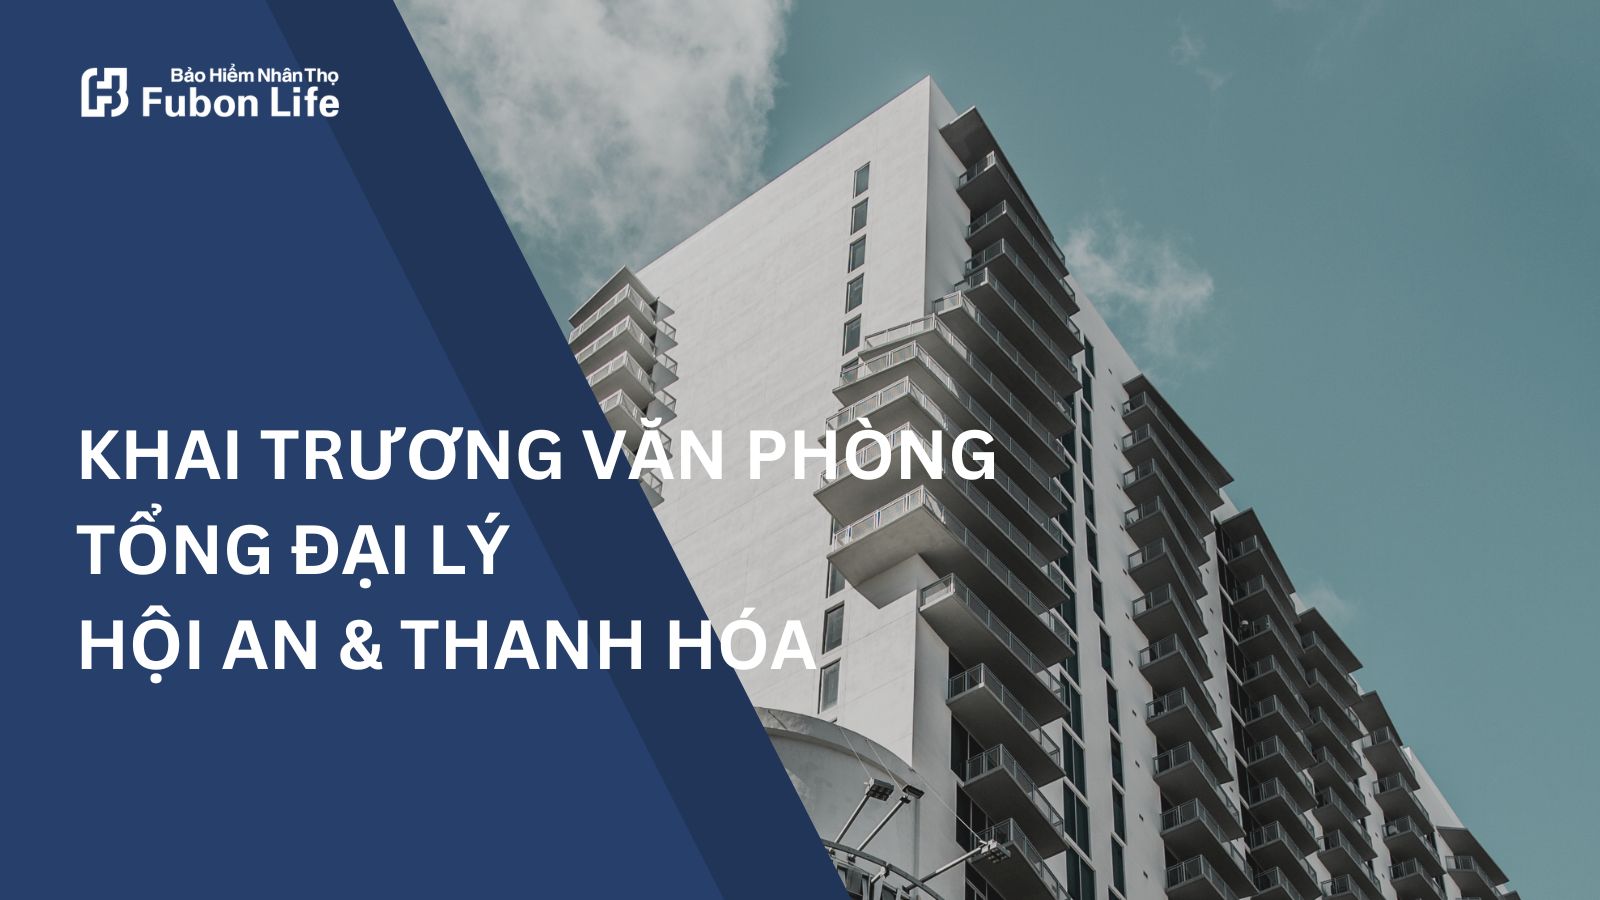 Fubon Life Việt Nam khai trương hai tổng đại lý mới tại Hội An và Thanh Hóa